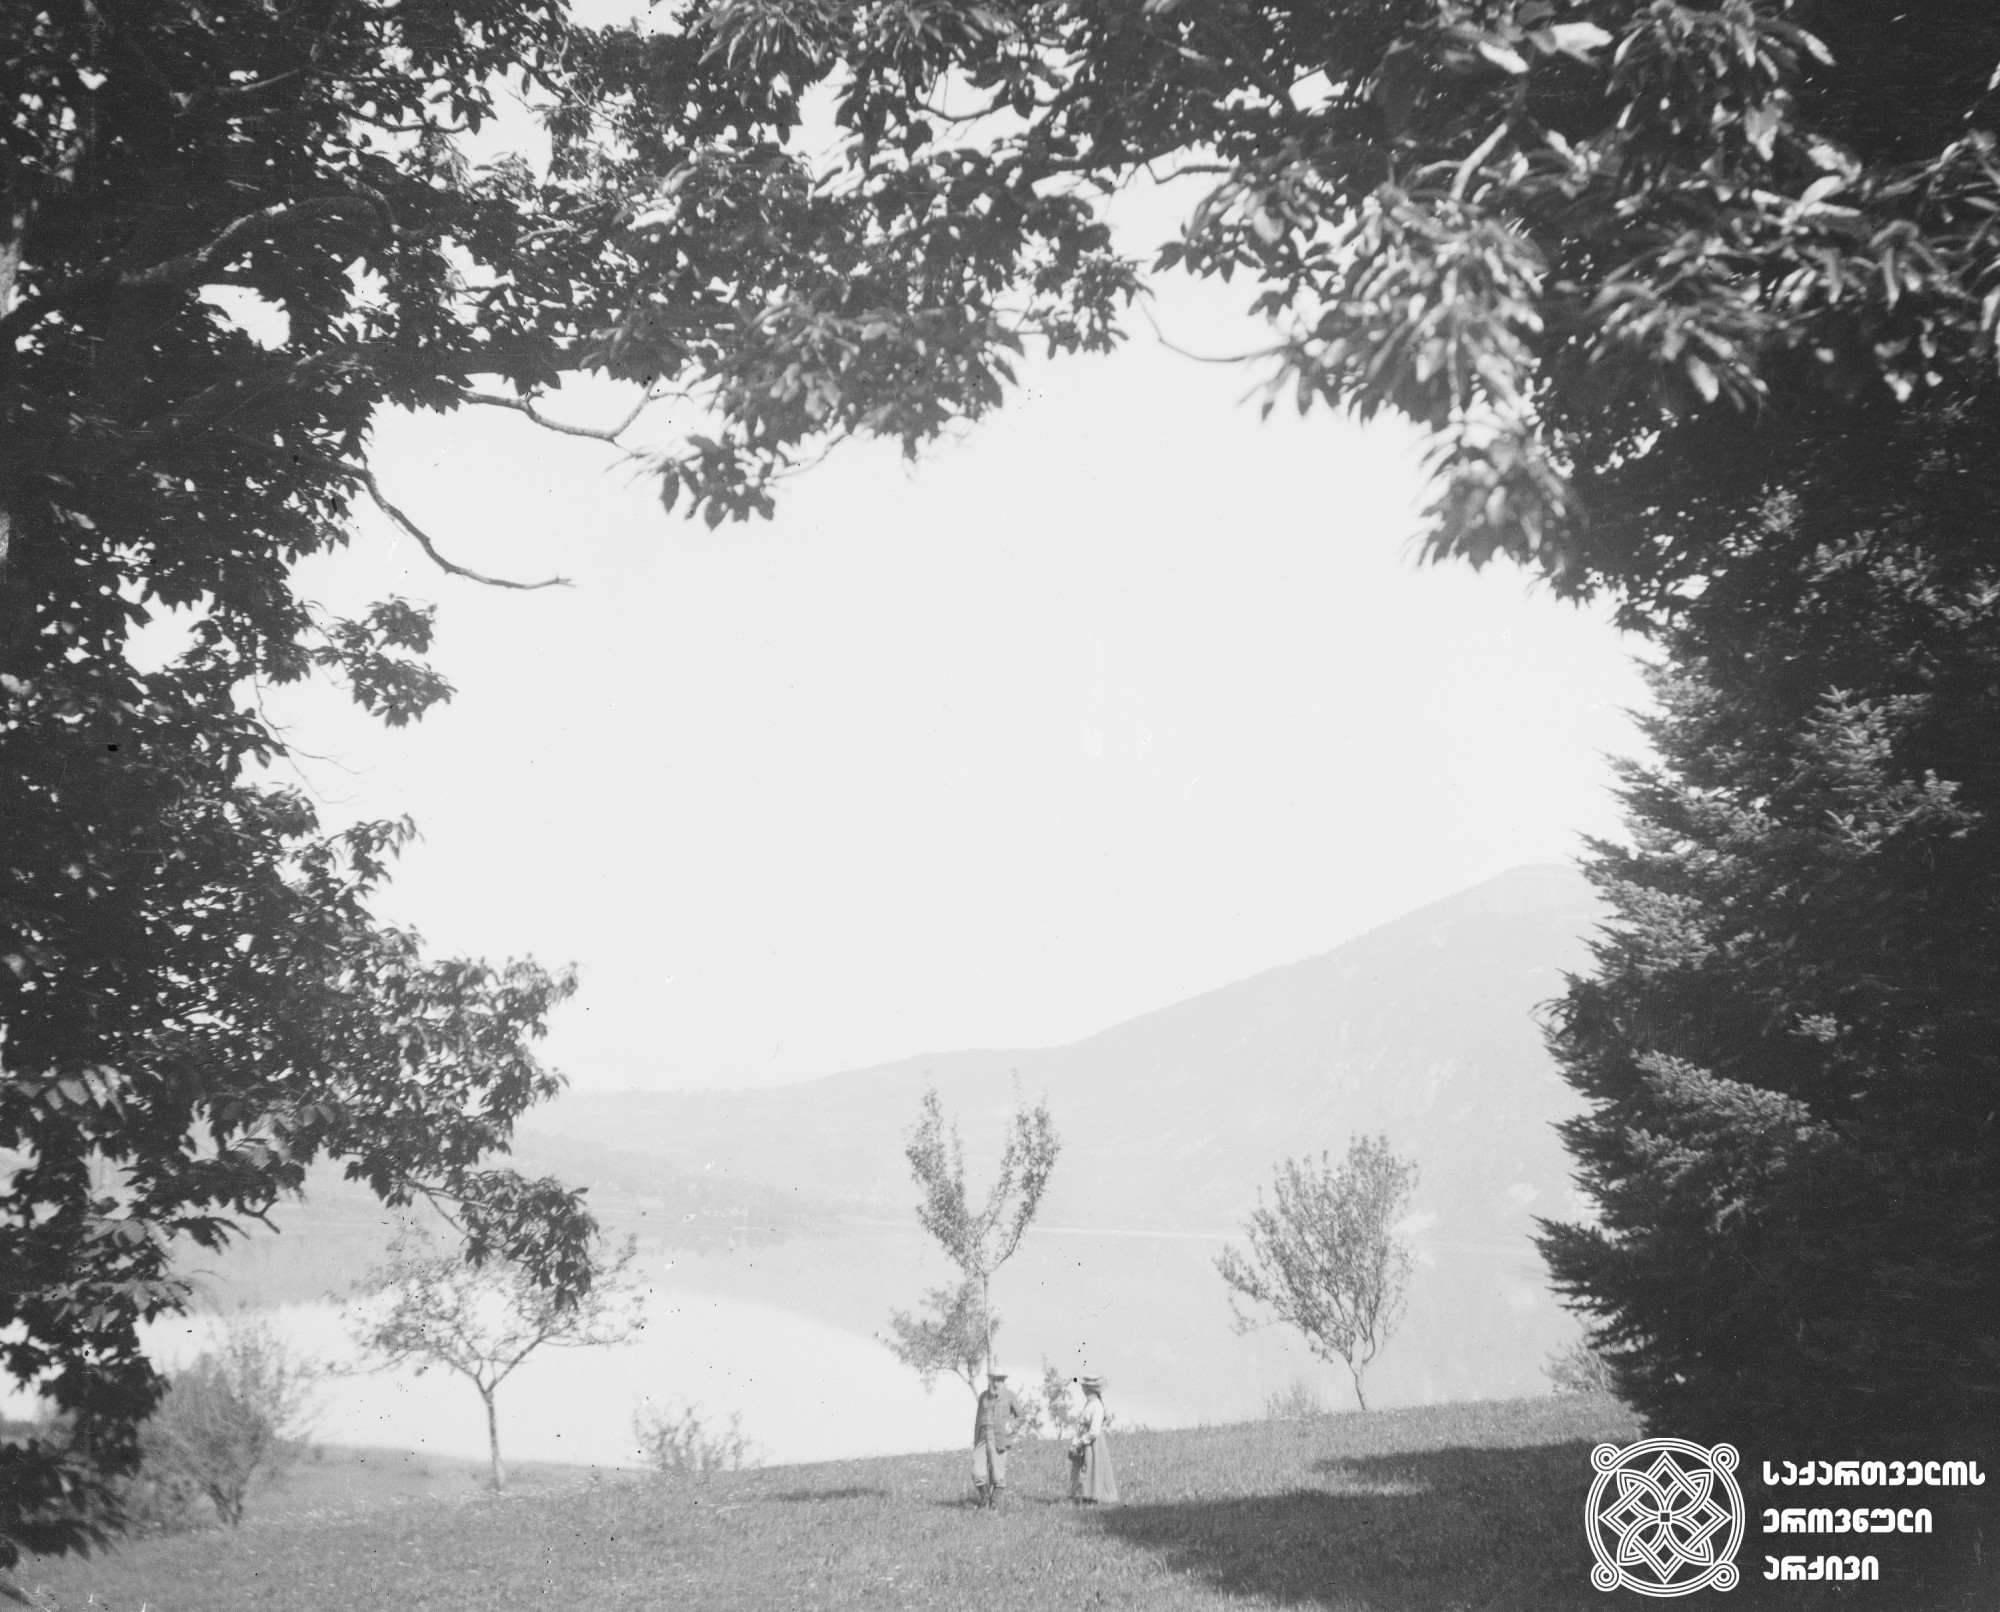 ნიკო ნიკოლაძე თავის ქალიშვილ რუსუდანთან ერთად ეგბელეტის ტბაზე. <br>
საფრანგეთი, 1903 წელი. <br>
ნიკოლაძე-ღამბაშიძის ფოტოკოლექცია.